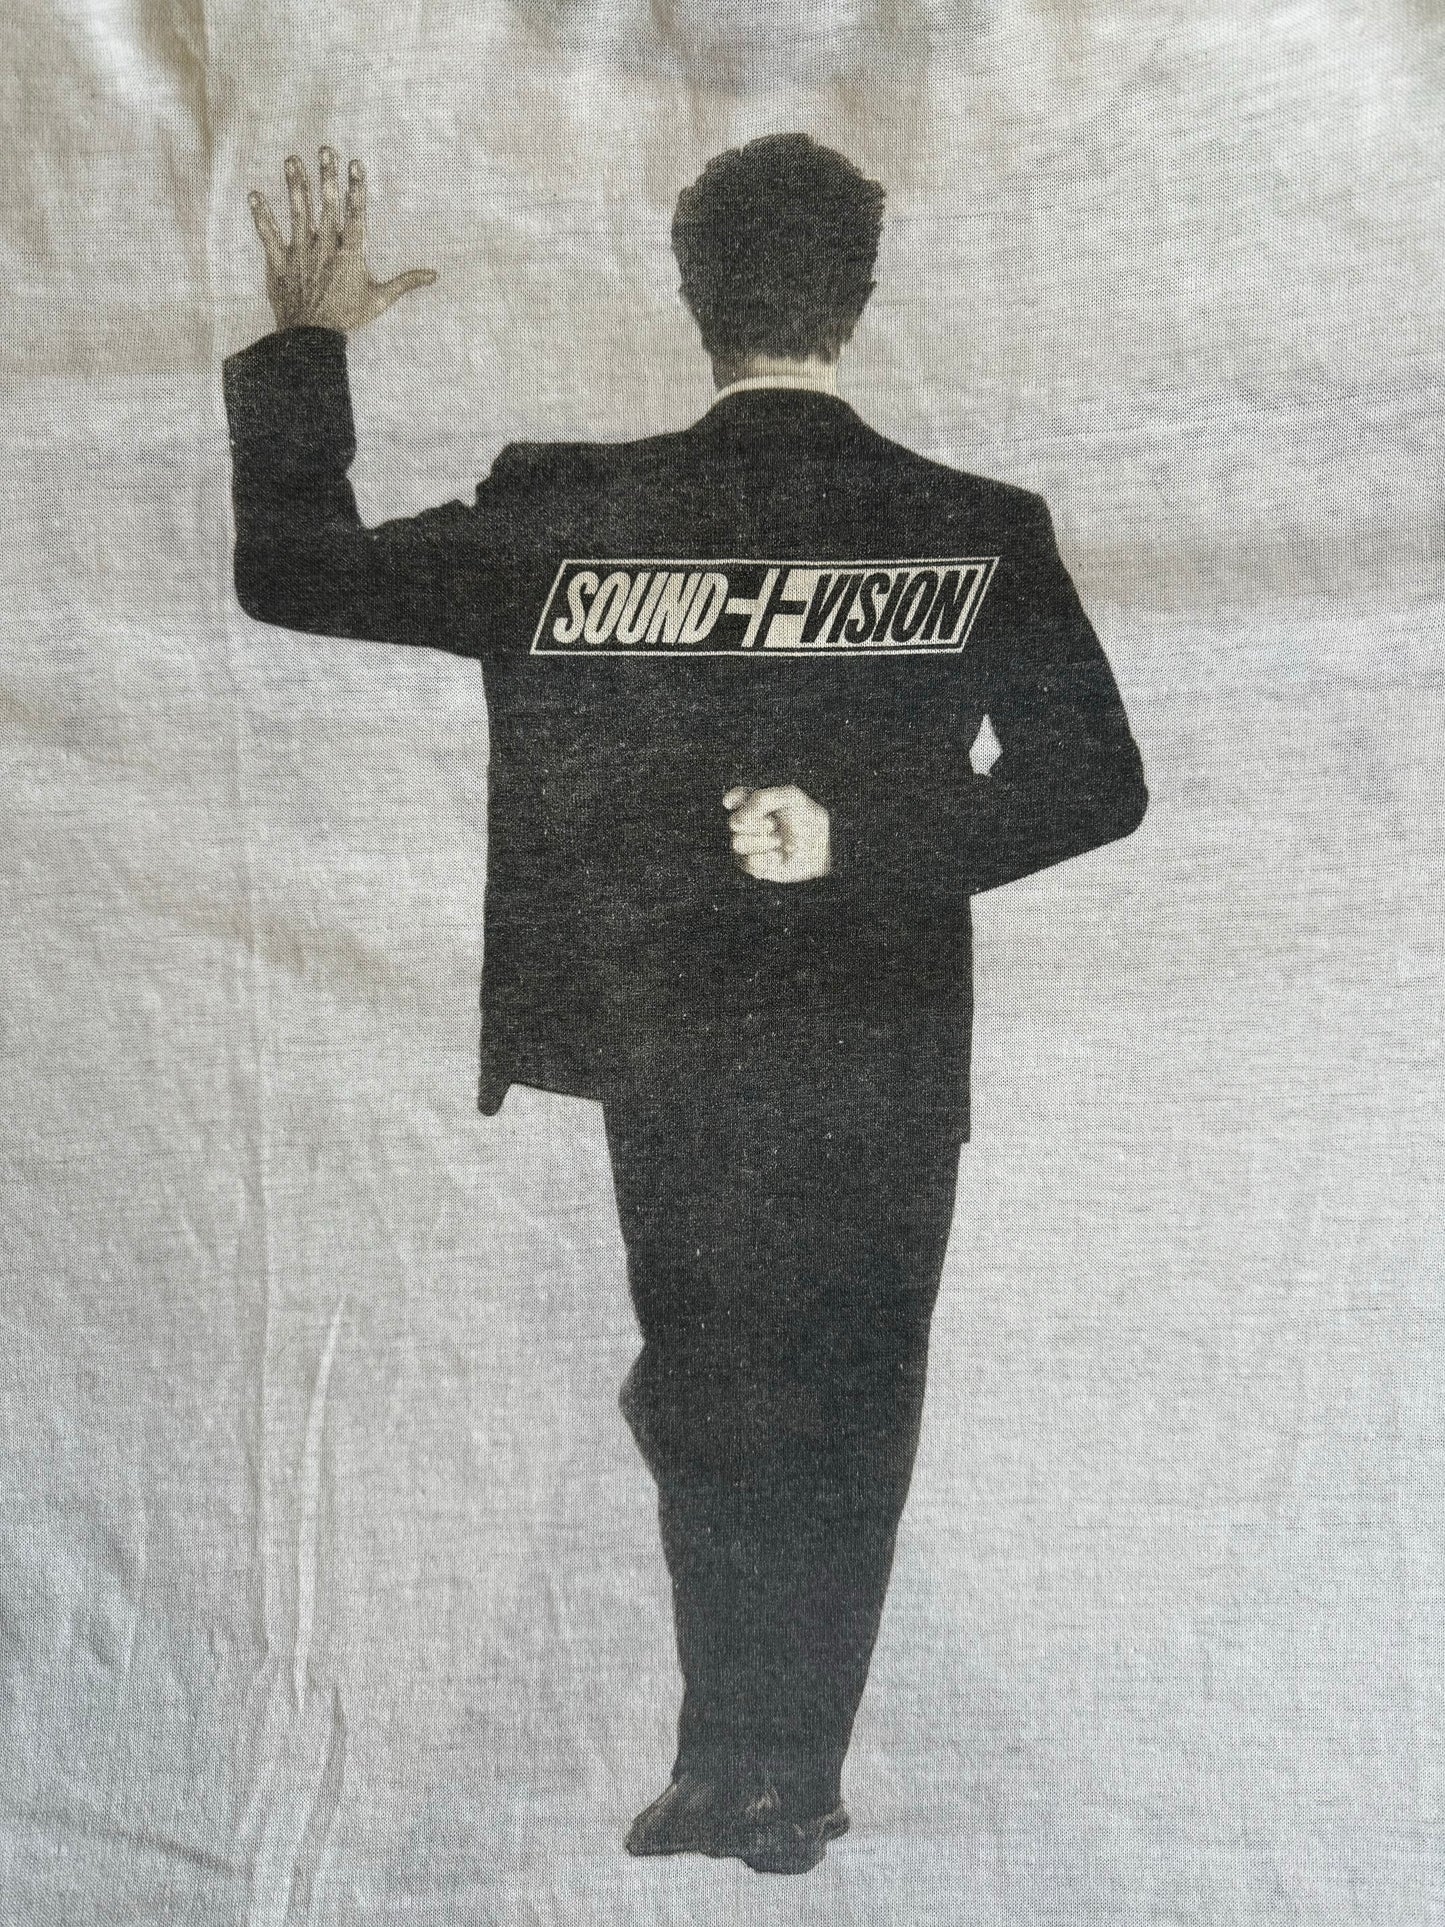 1990 David Bowie Vintage T Shirt